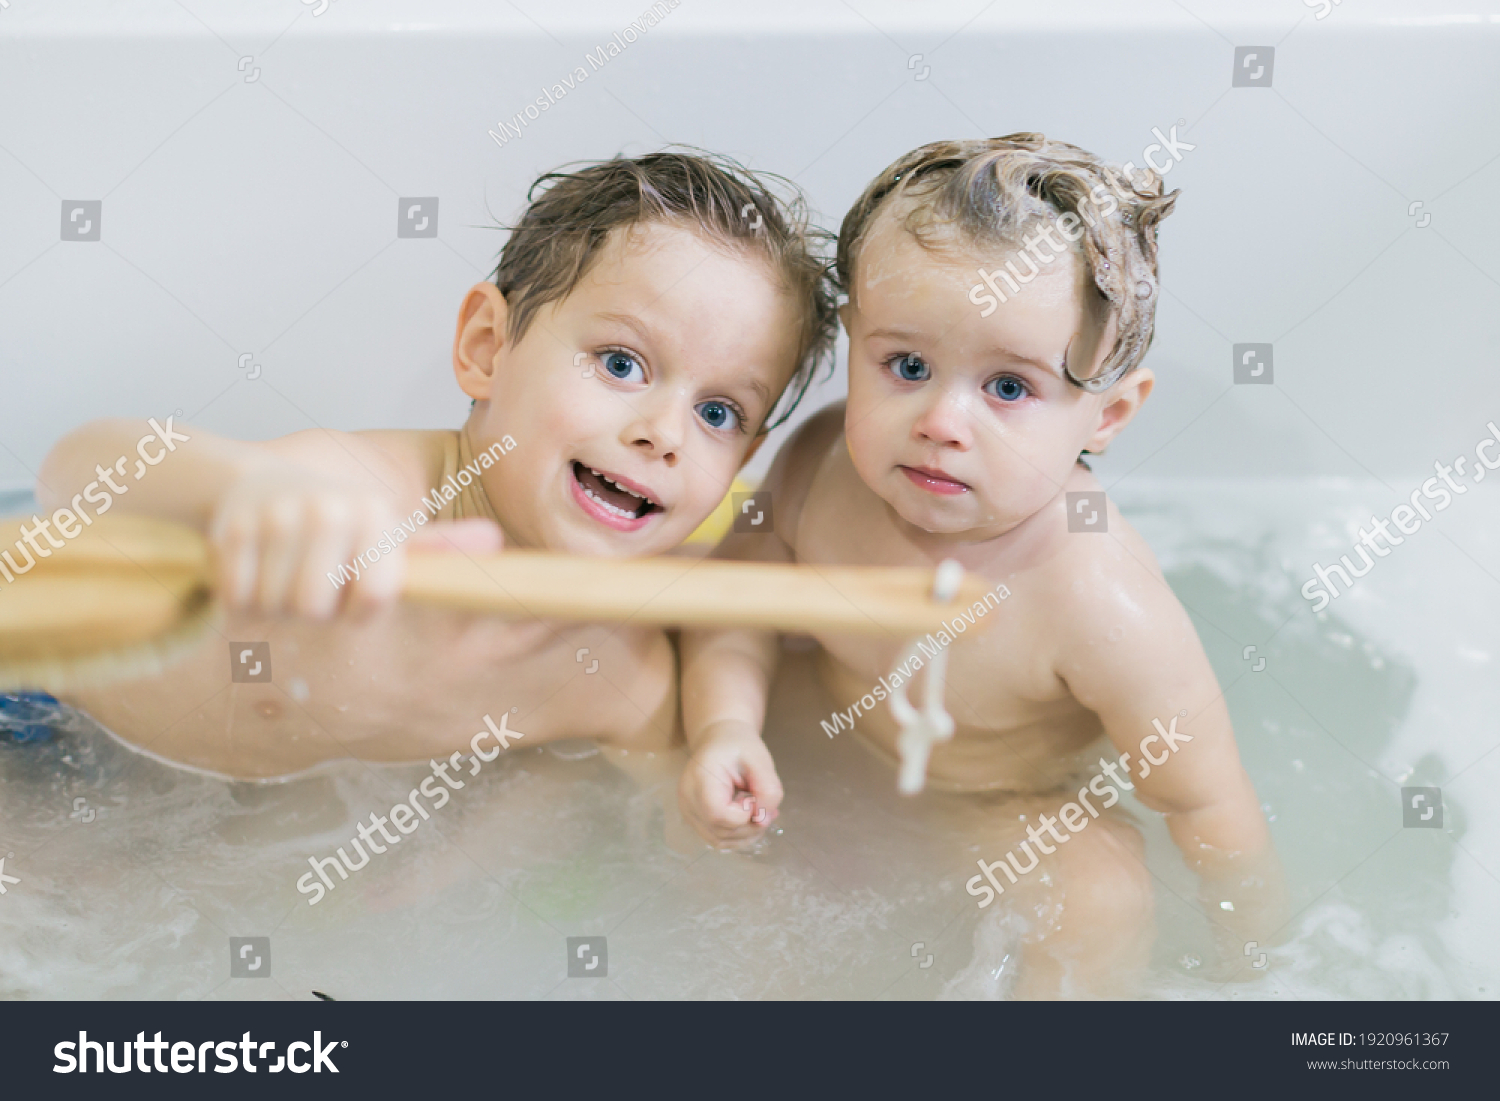 Young lass having fun in the bath